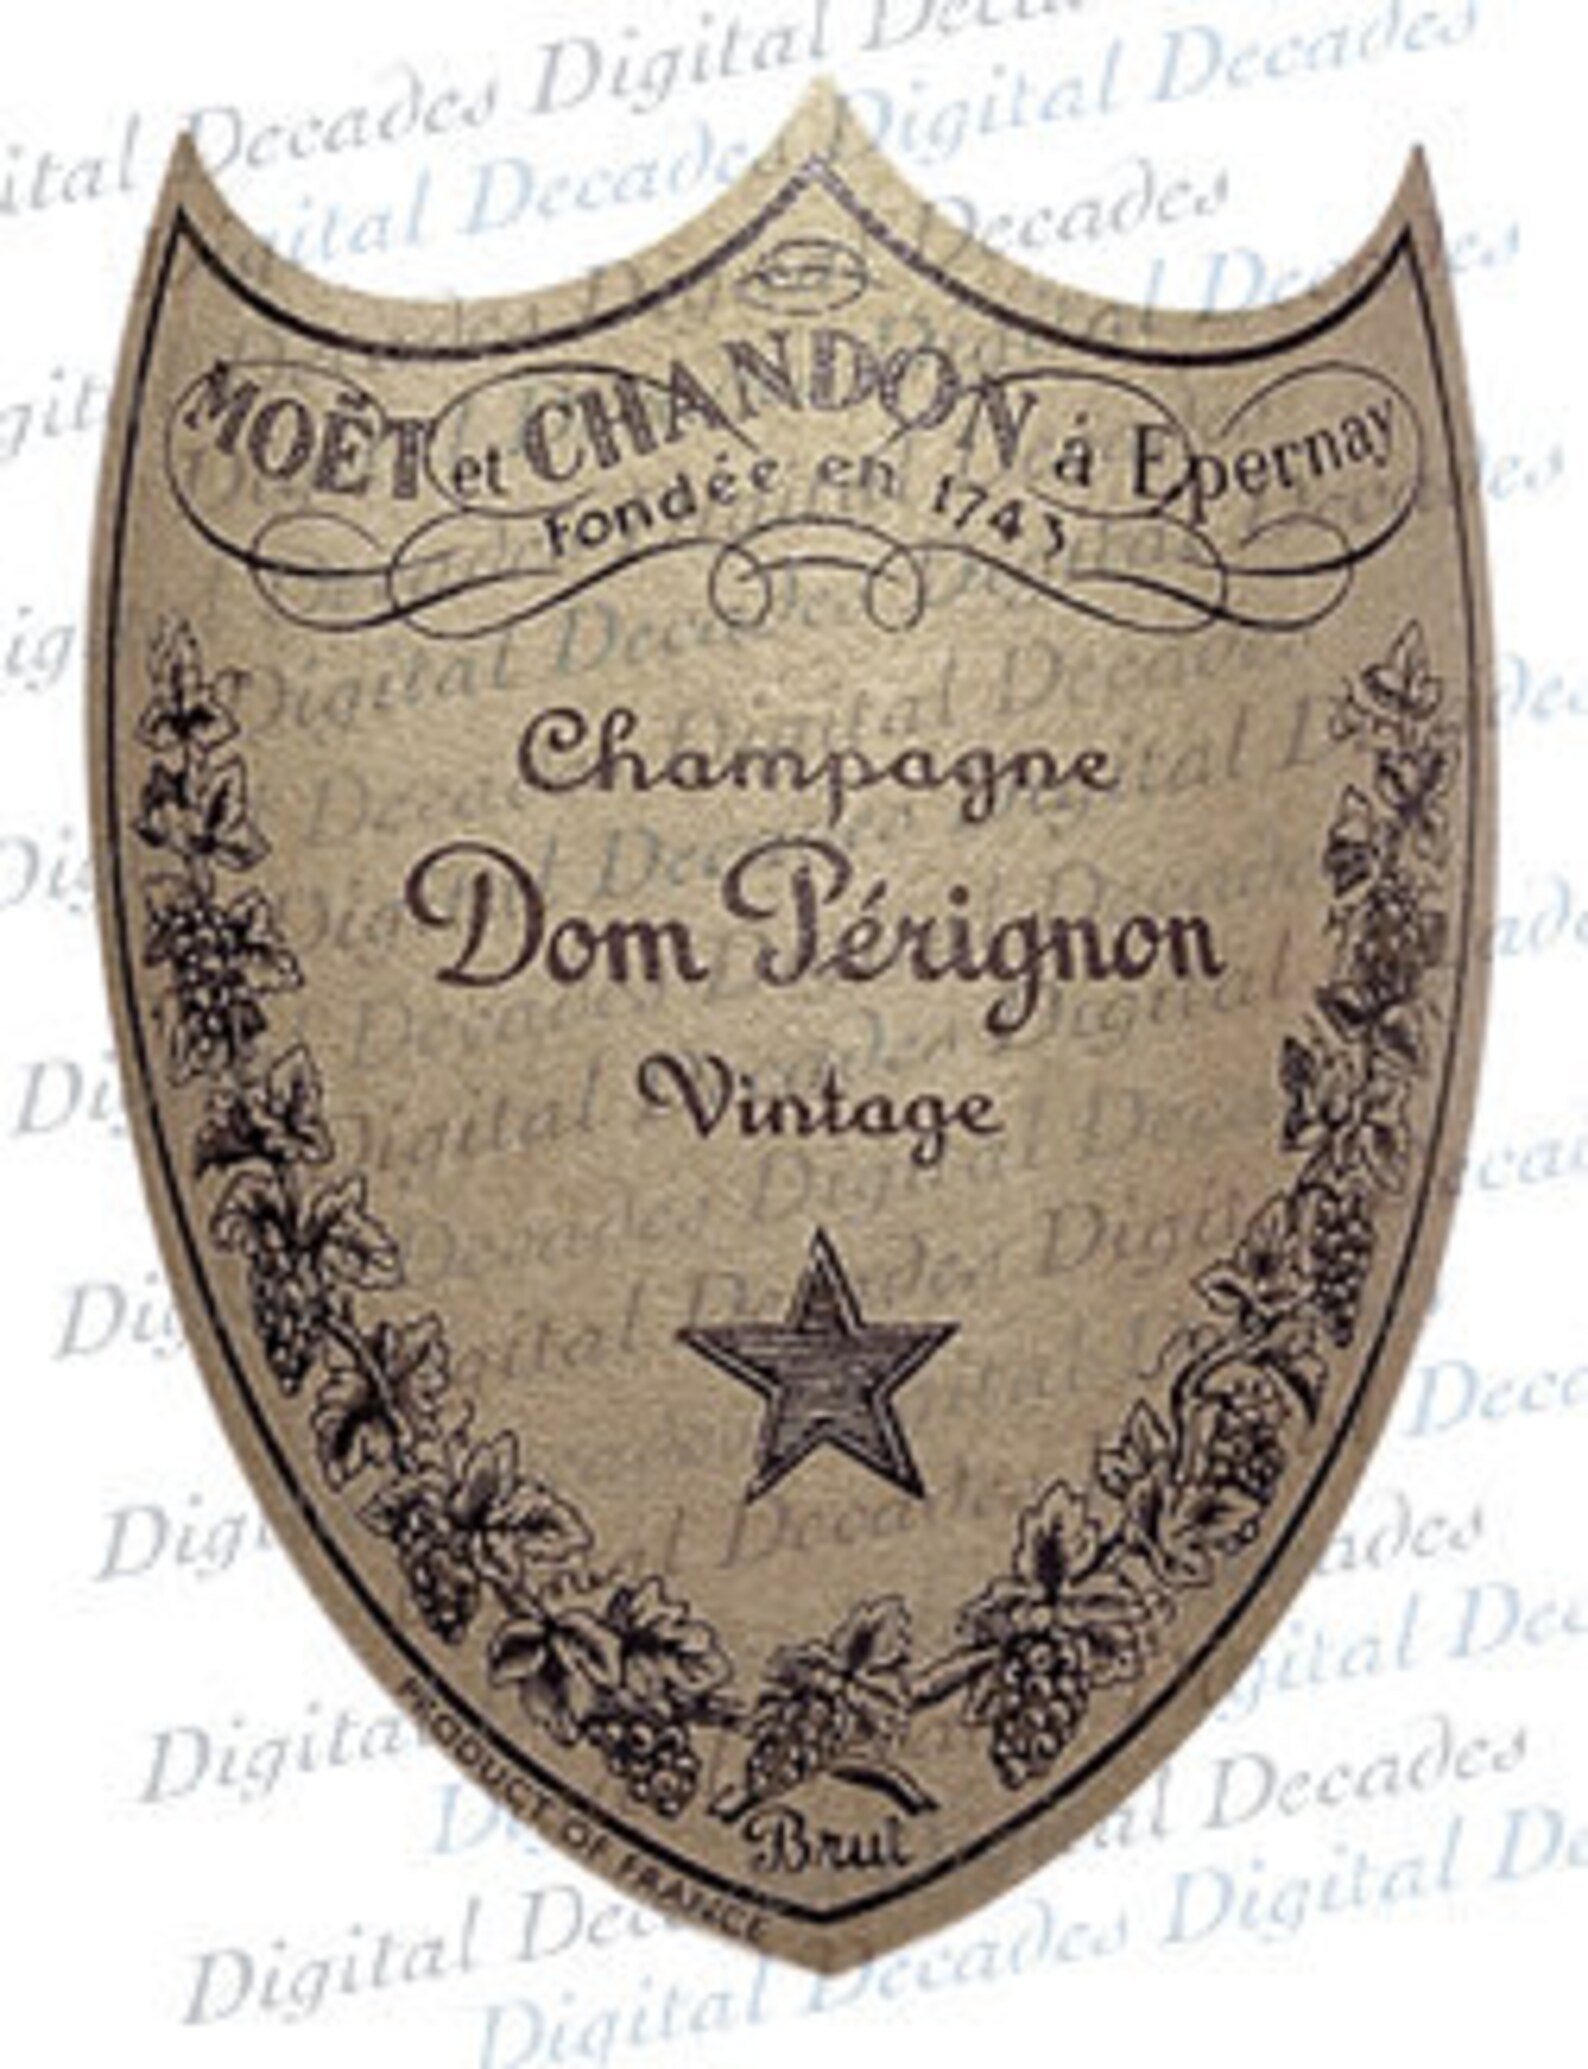 Champagne Bottle Label Digital Vintage Photo Image Instant | Etsy